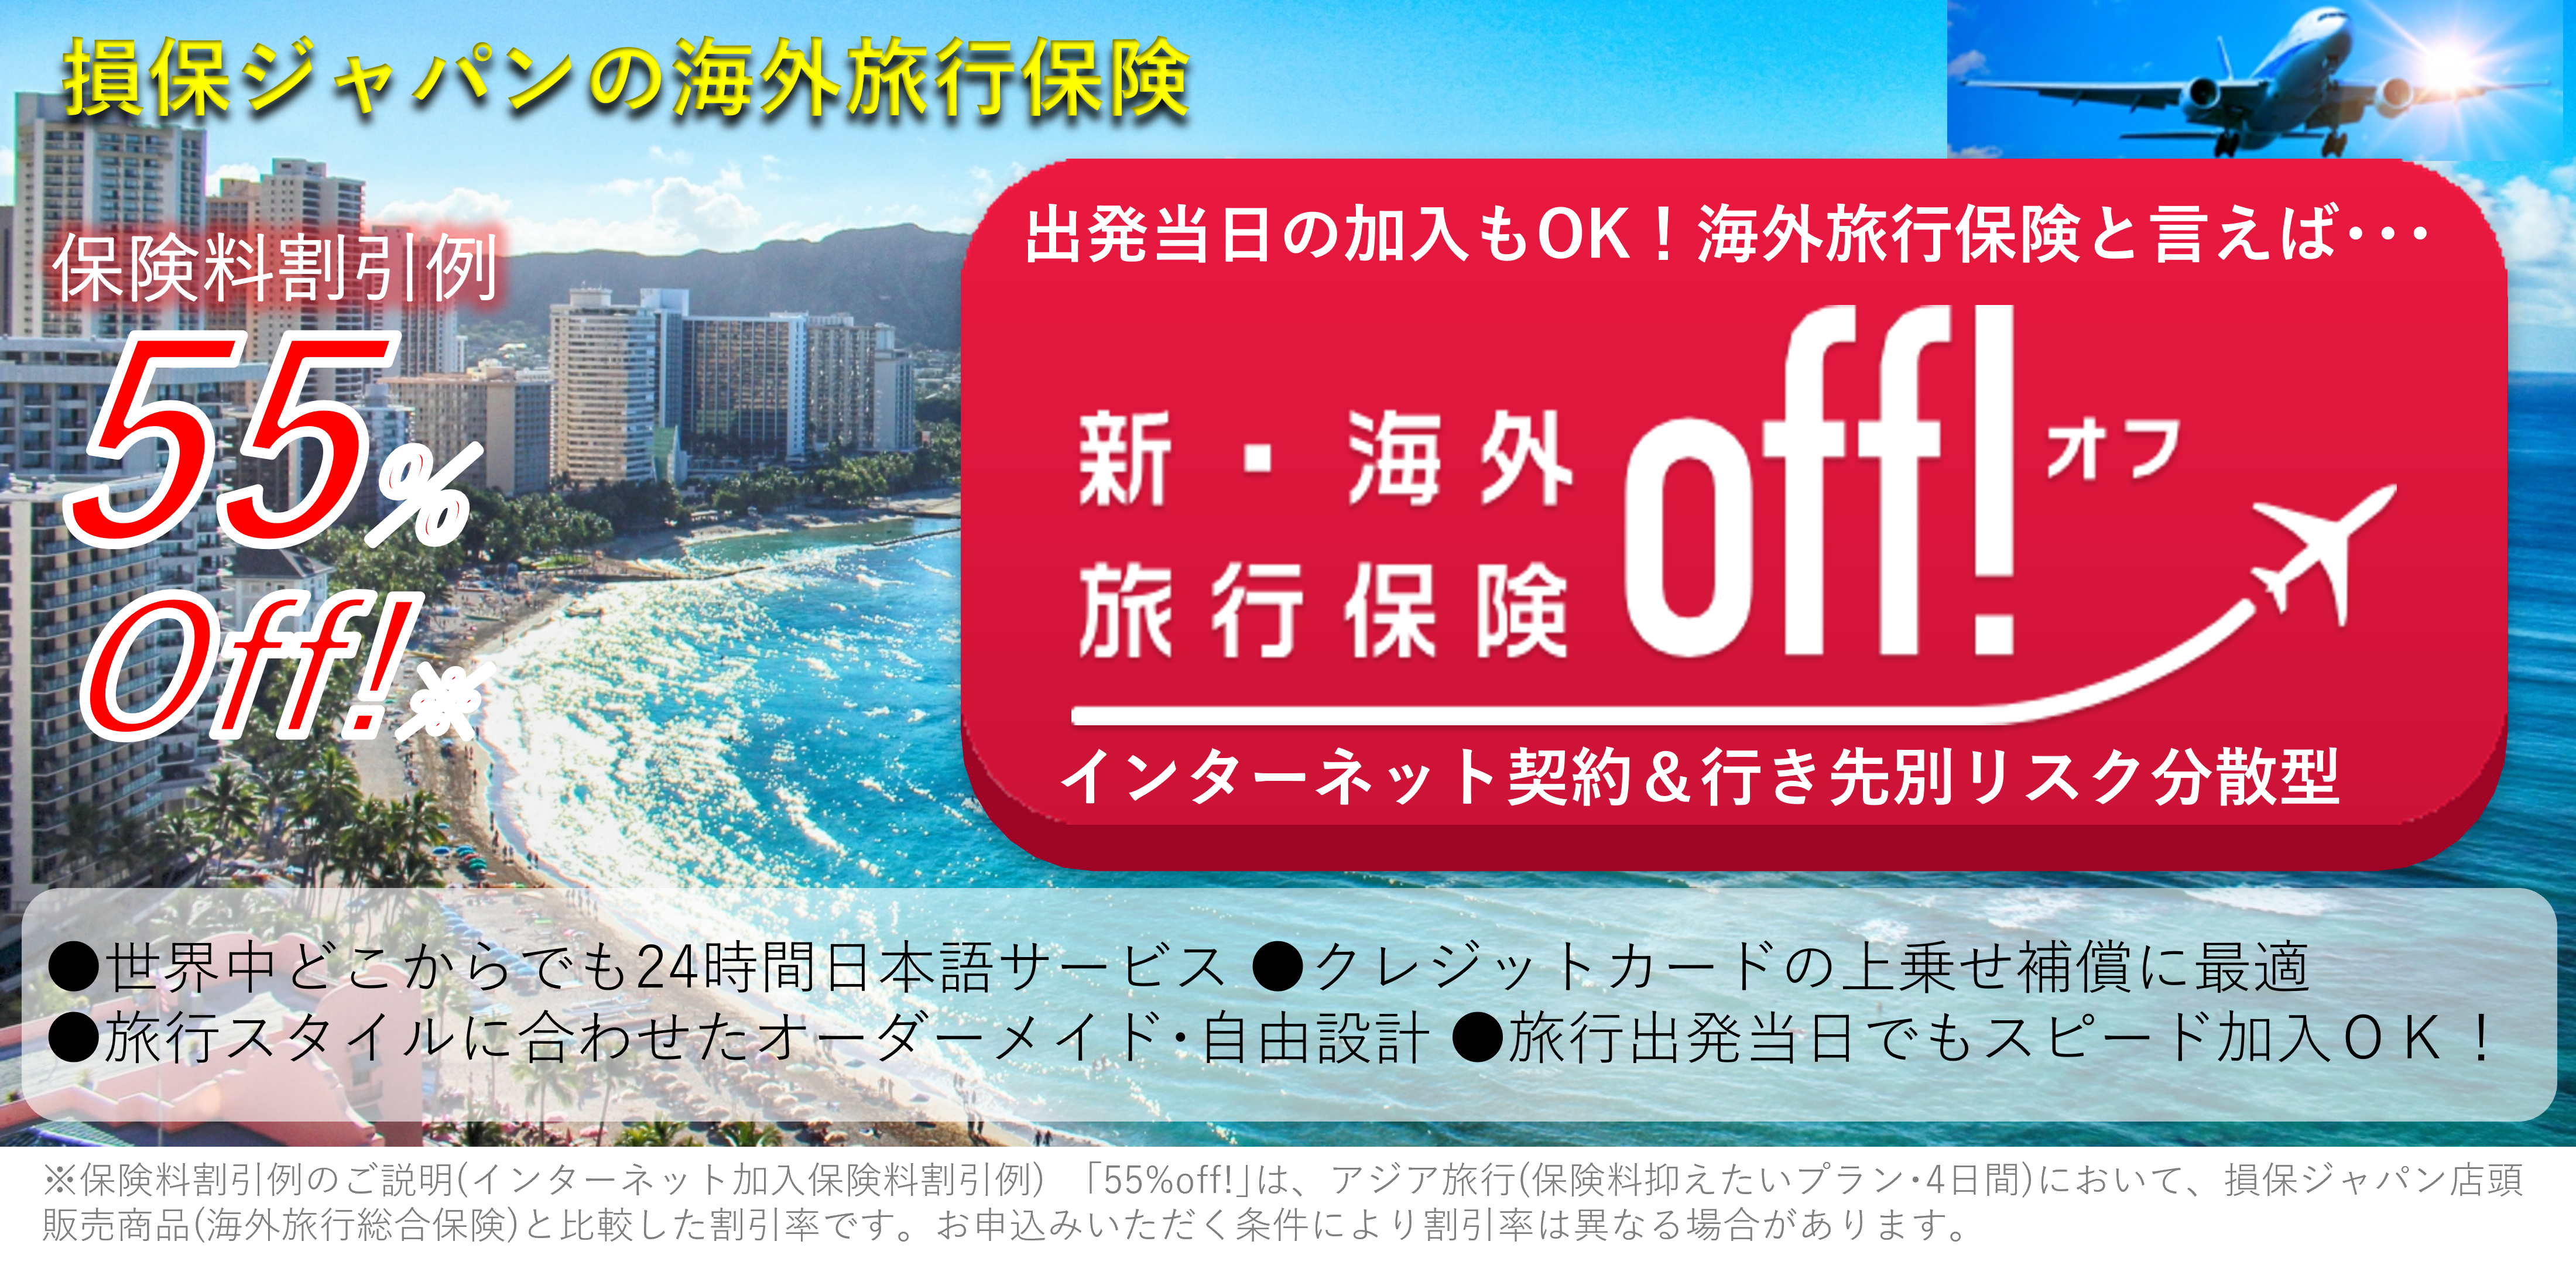 損保ジャパンの新海外旅行保険【off】オフ